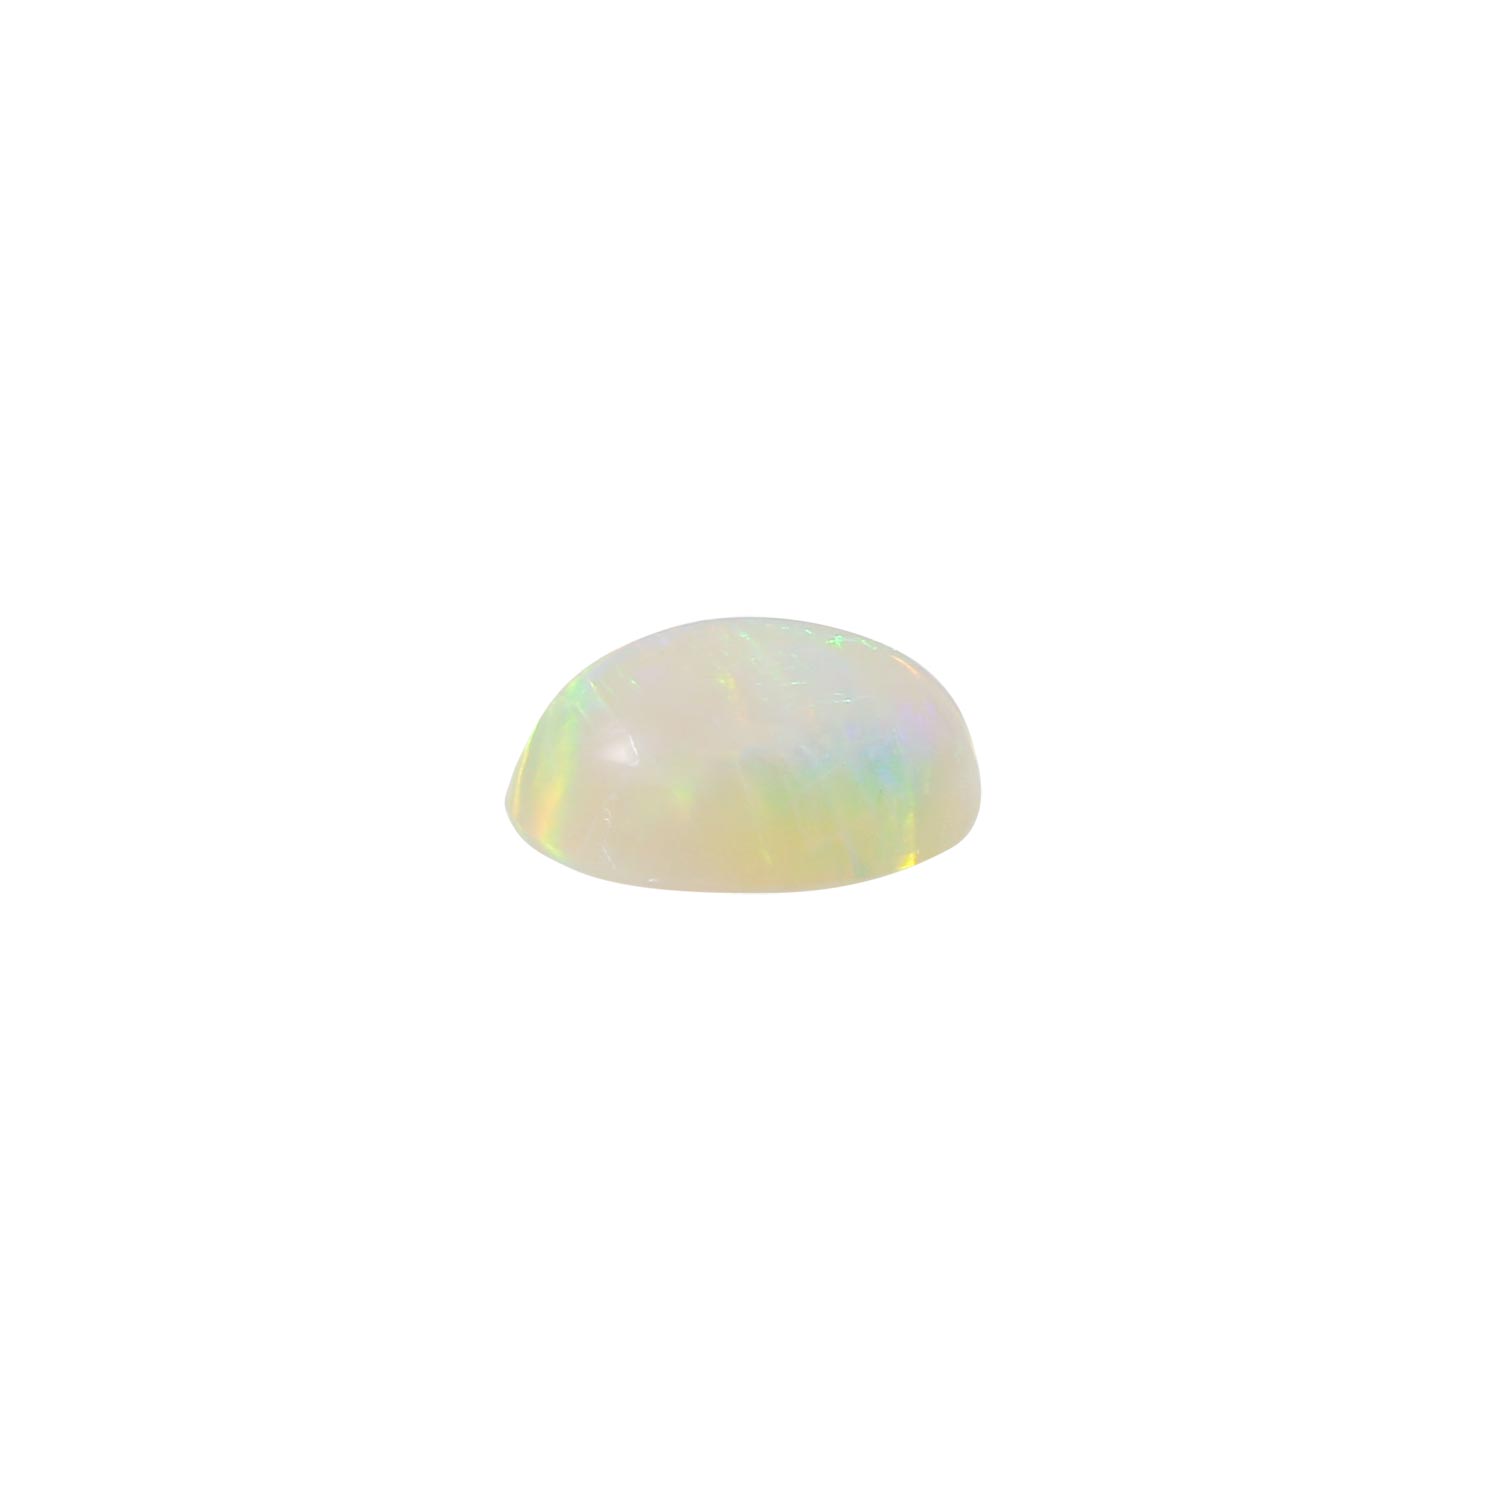 Weißer Opal 3,88 ct mit fantastischem Farbspiel,